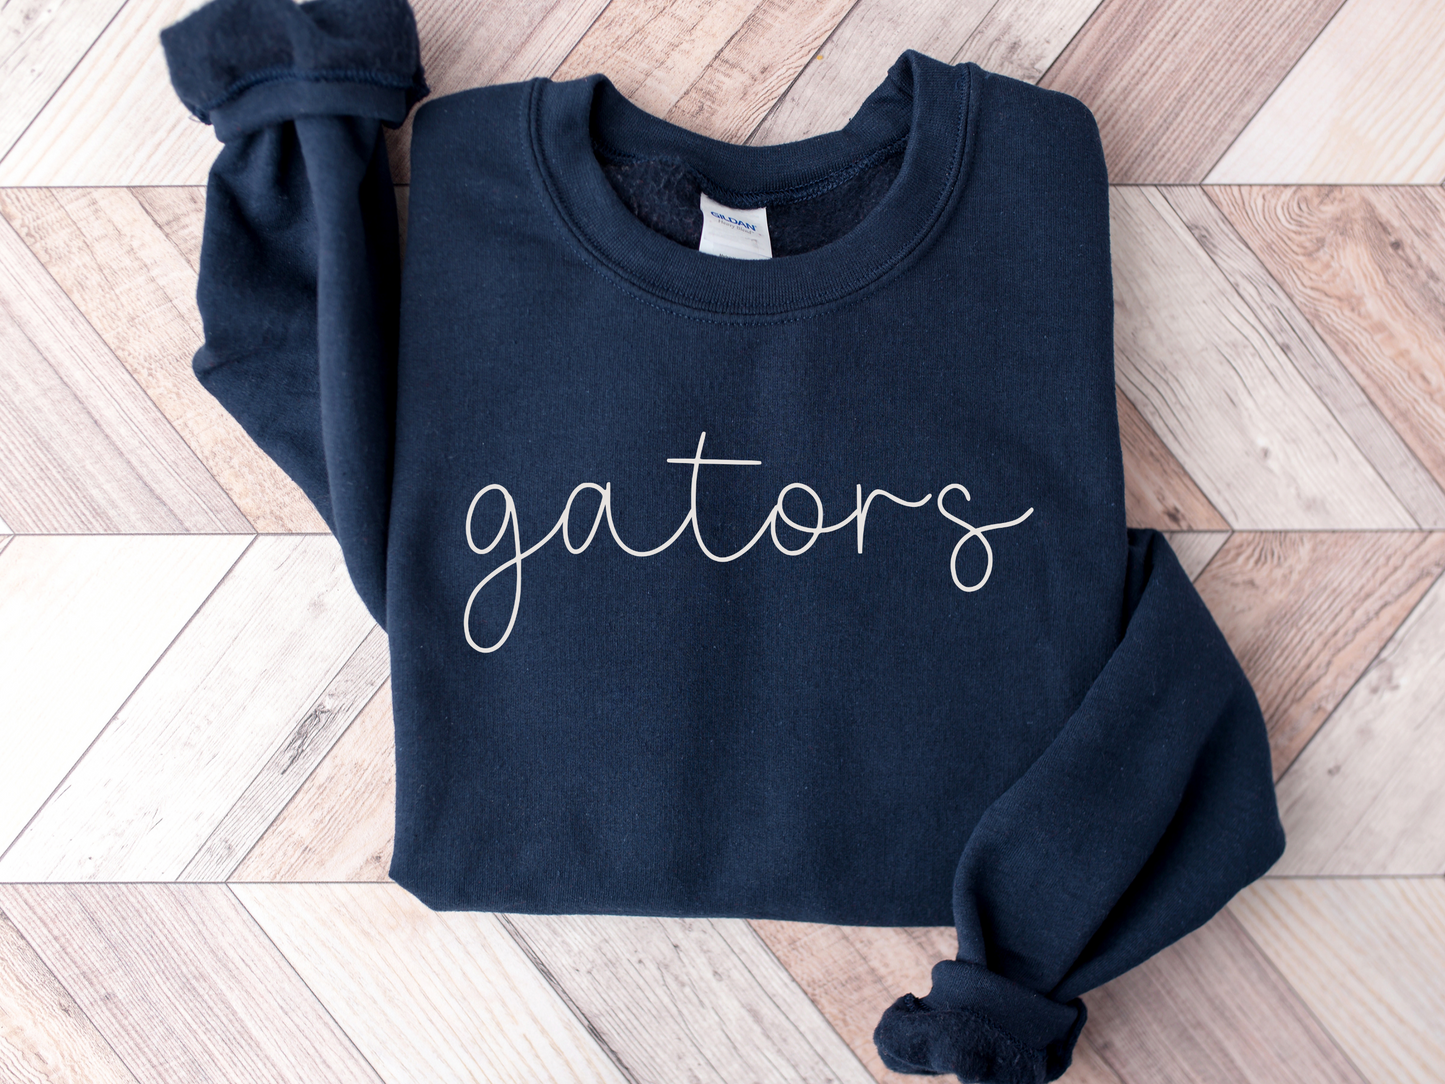 Gators Minimalist Adult Unisex Sweatshirt